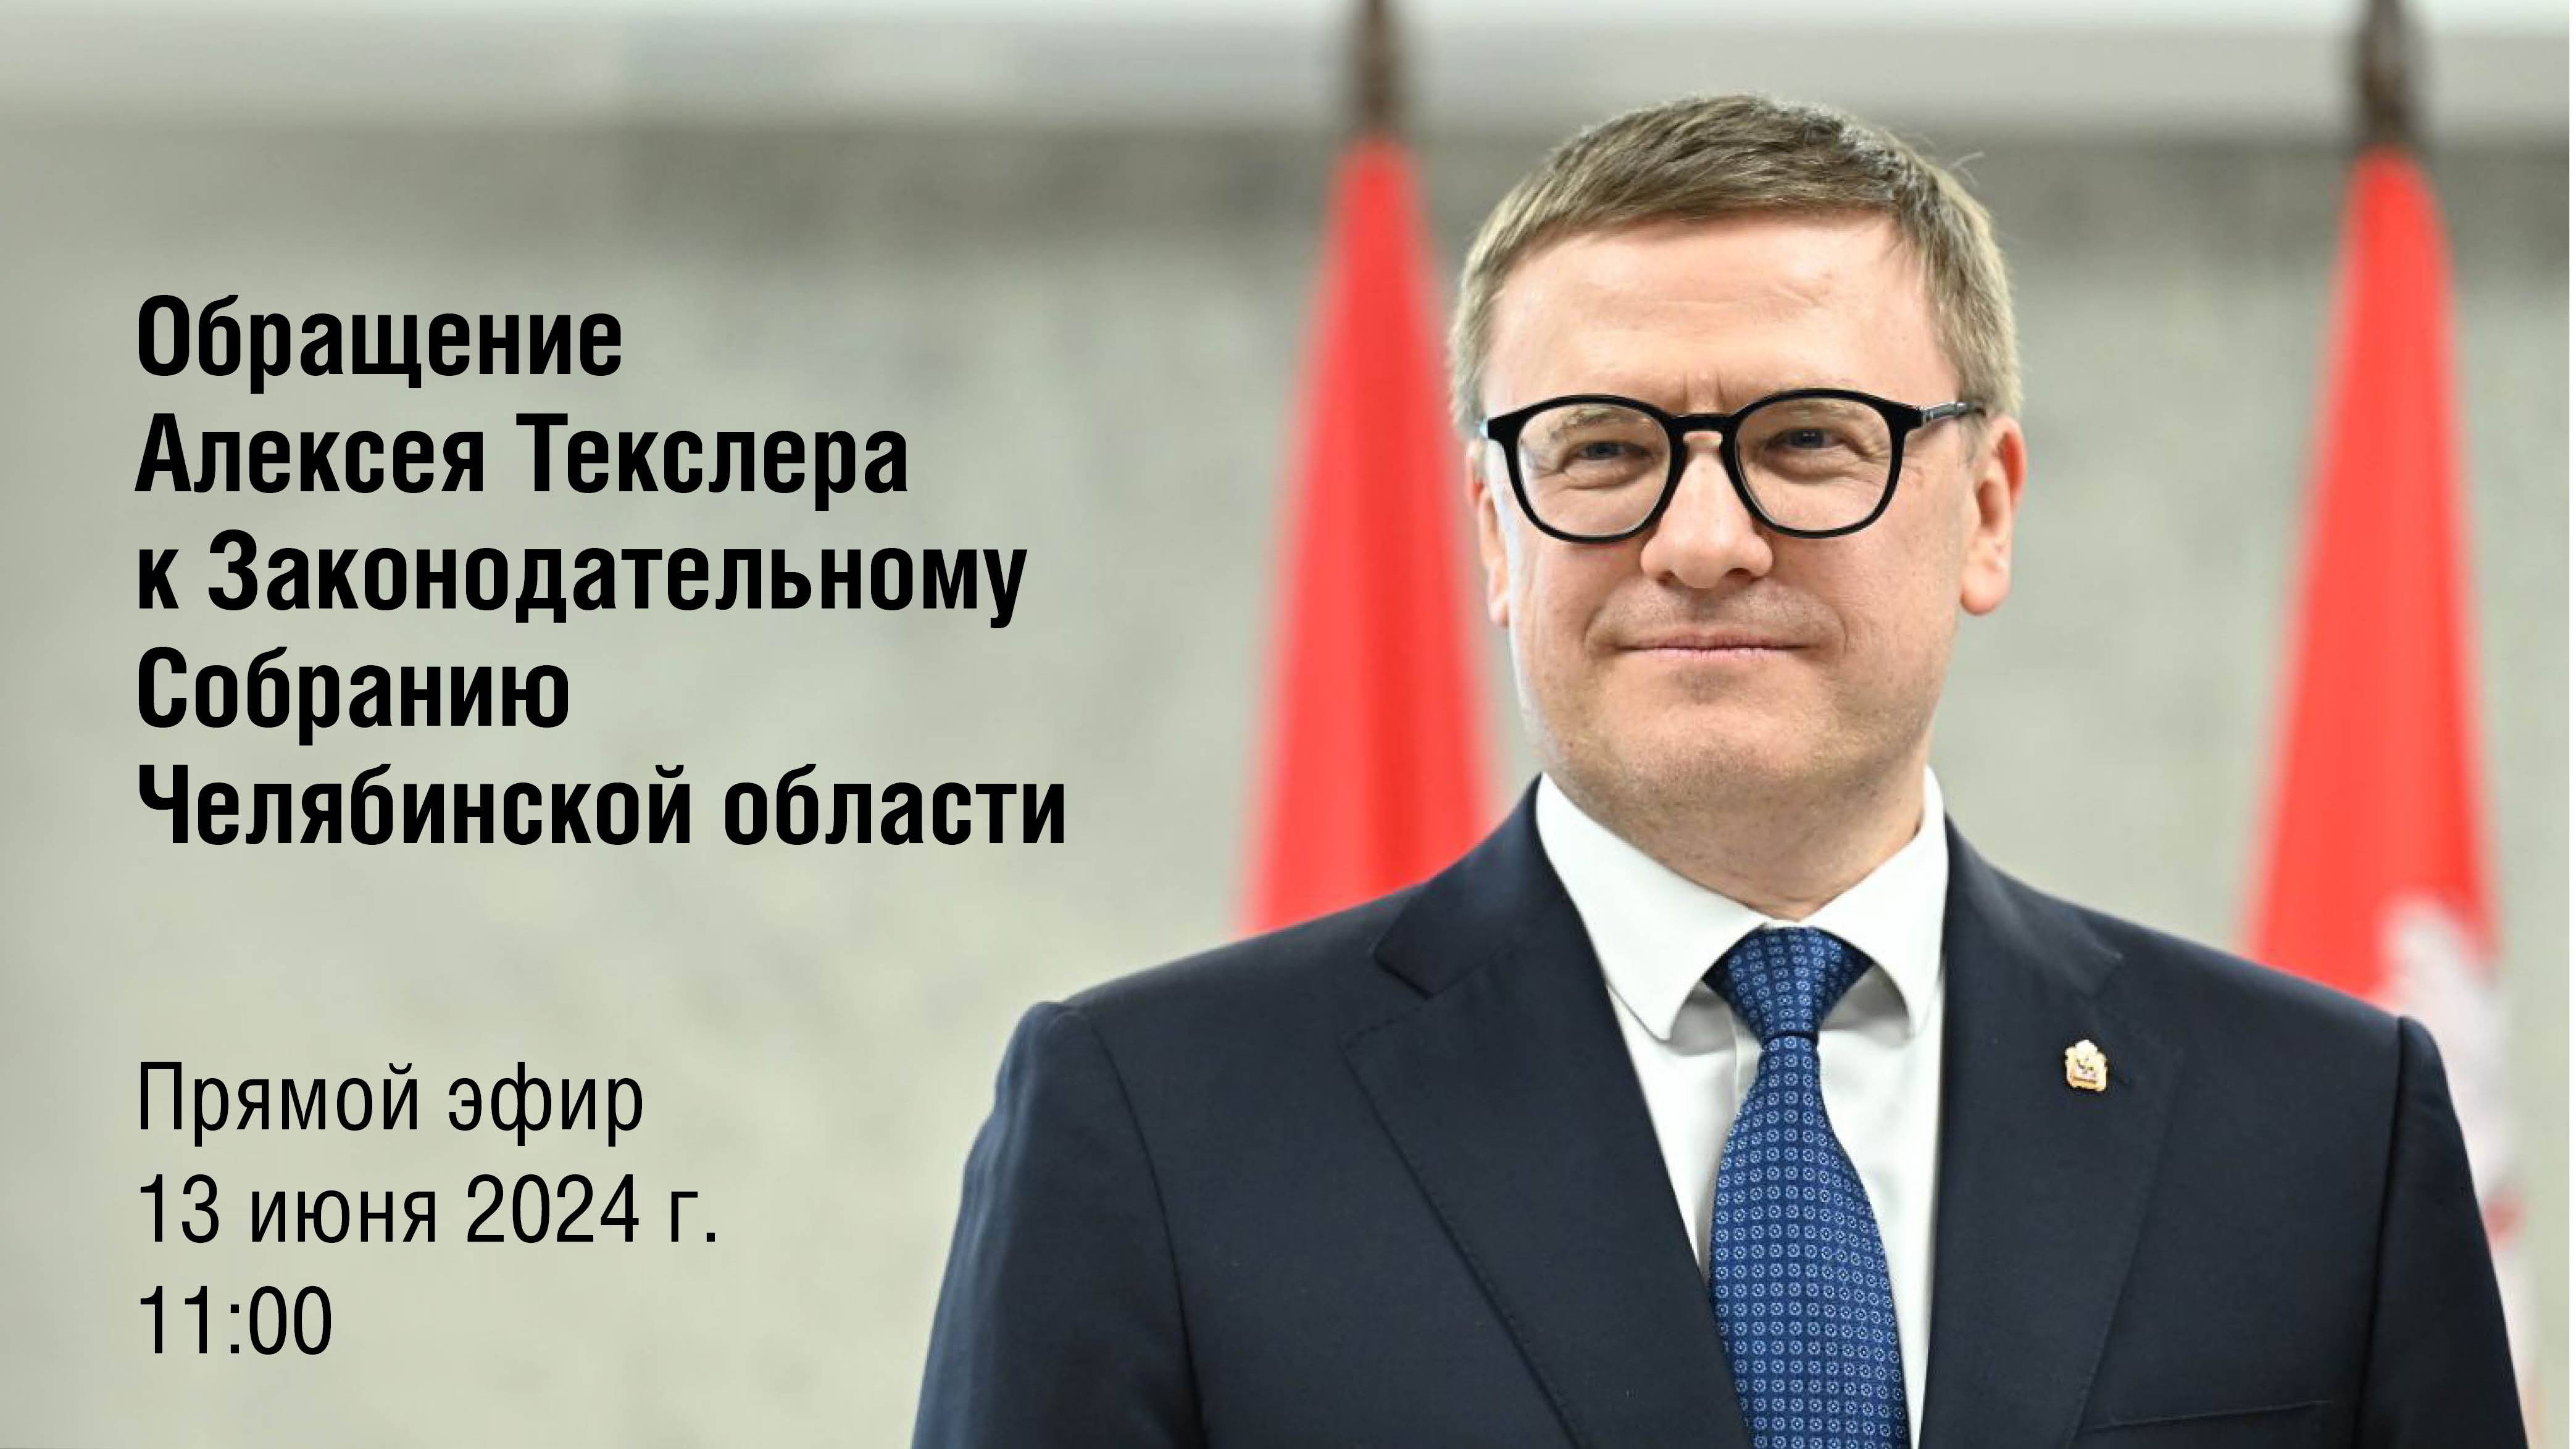 Обращение Алексея Текслера к Законодательному Собранию Челябинской области